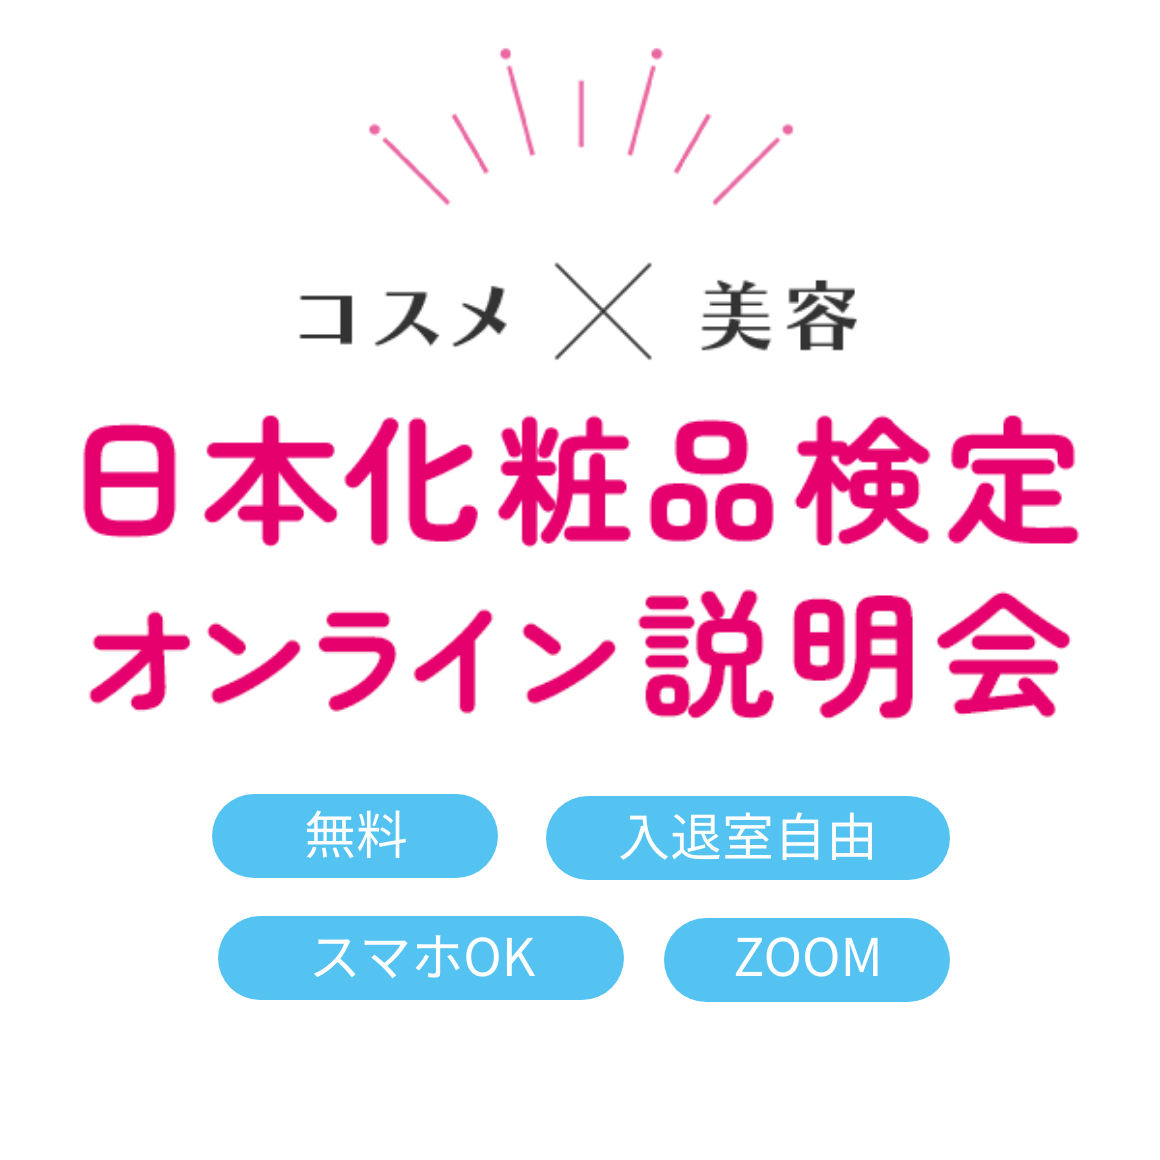 コスメ×美容 日本化粧品検定 オンライン説明会 無料 入退室自由 スマホOK ZOOM